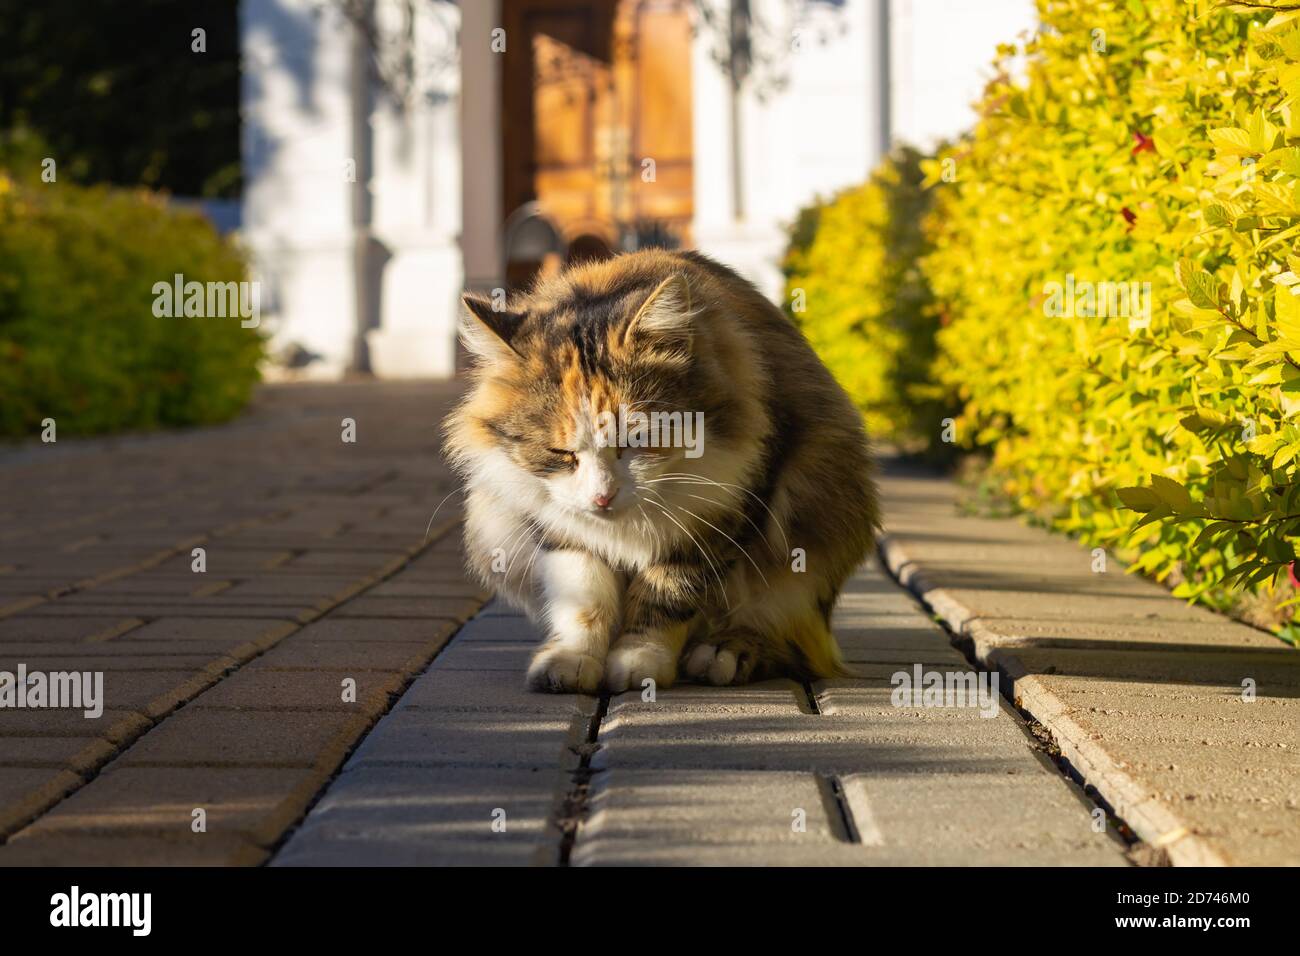 Cat sneaks on the sidewalk Stock Photo